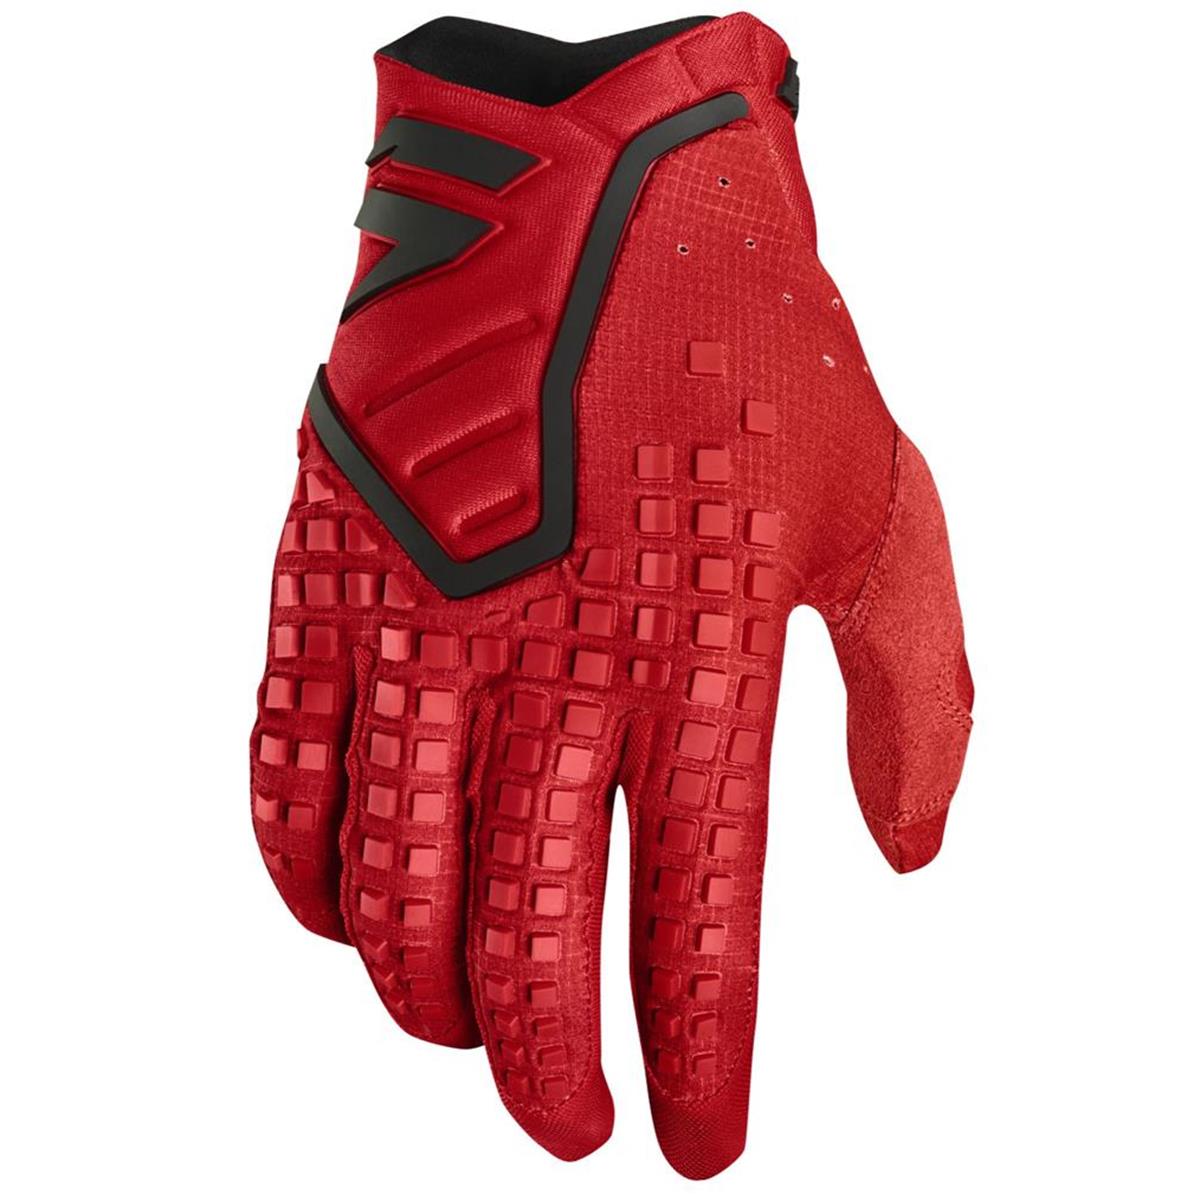 Shift Gloves 3lack Label Pro Red